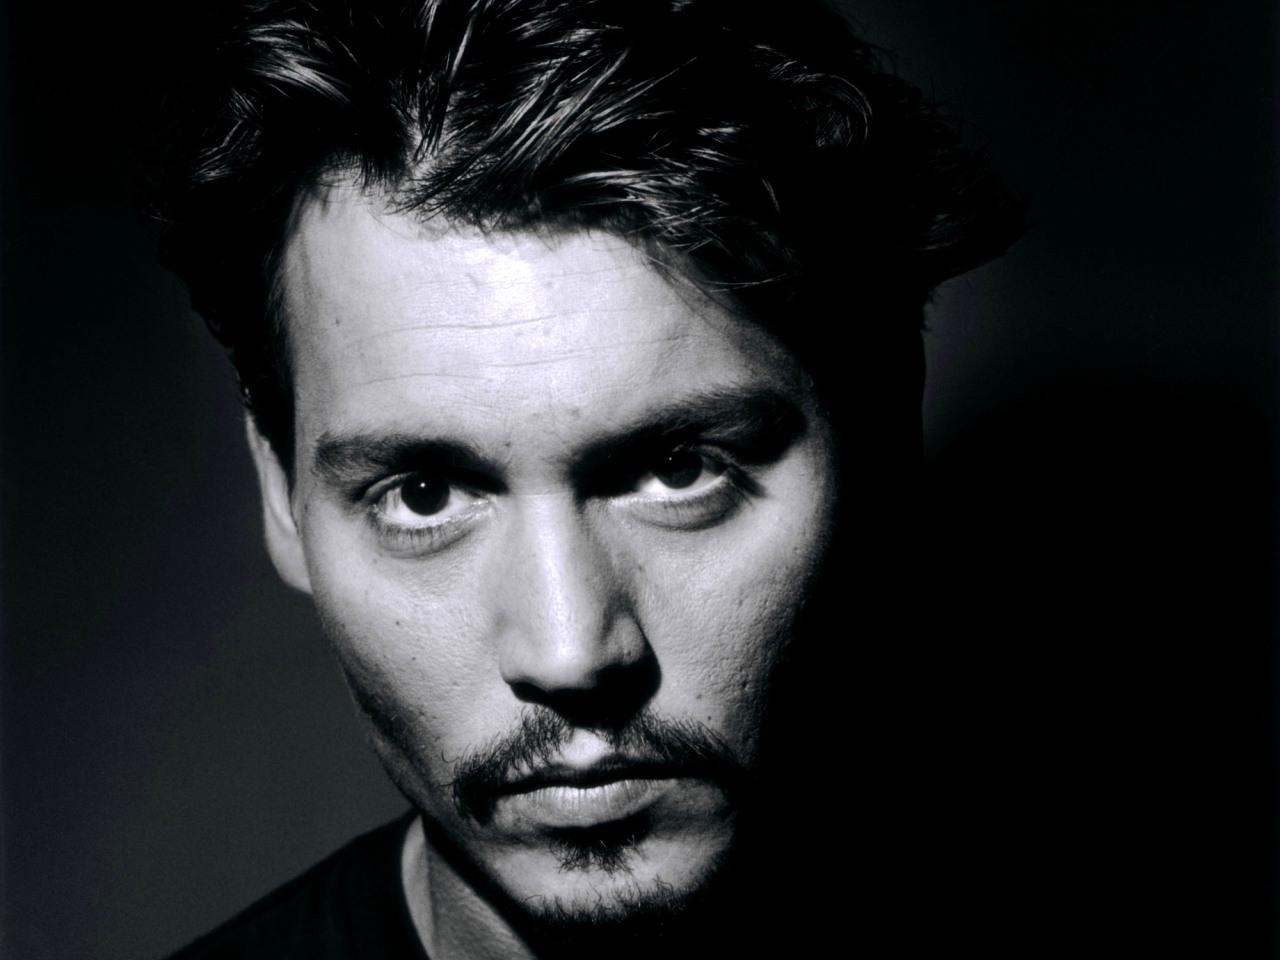 Jd Wallpaper Johnny Depp